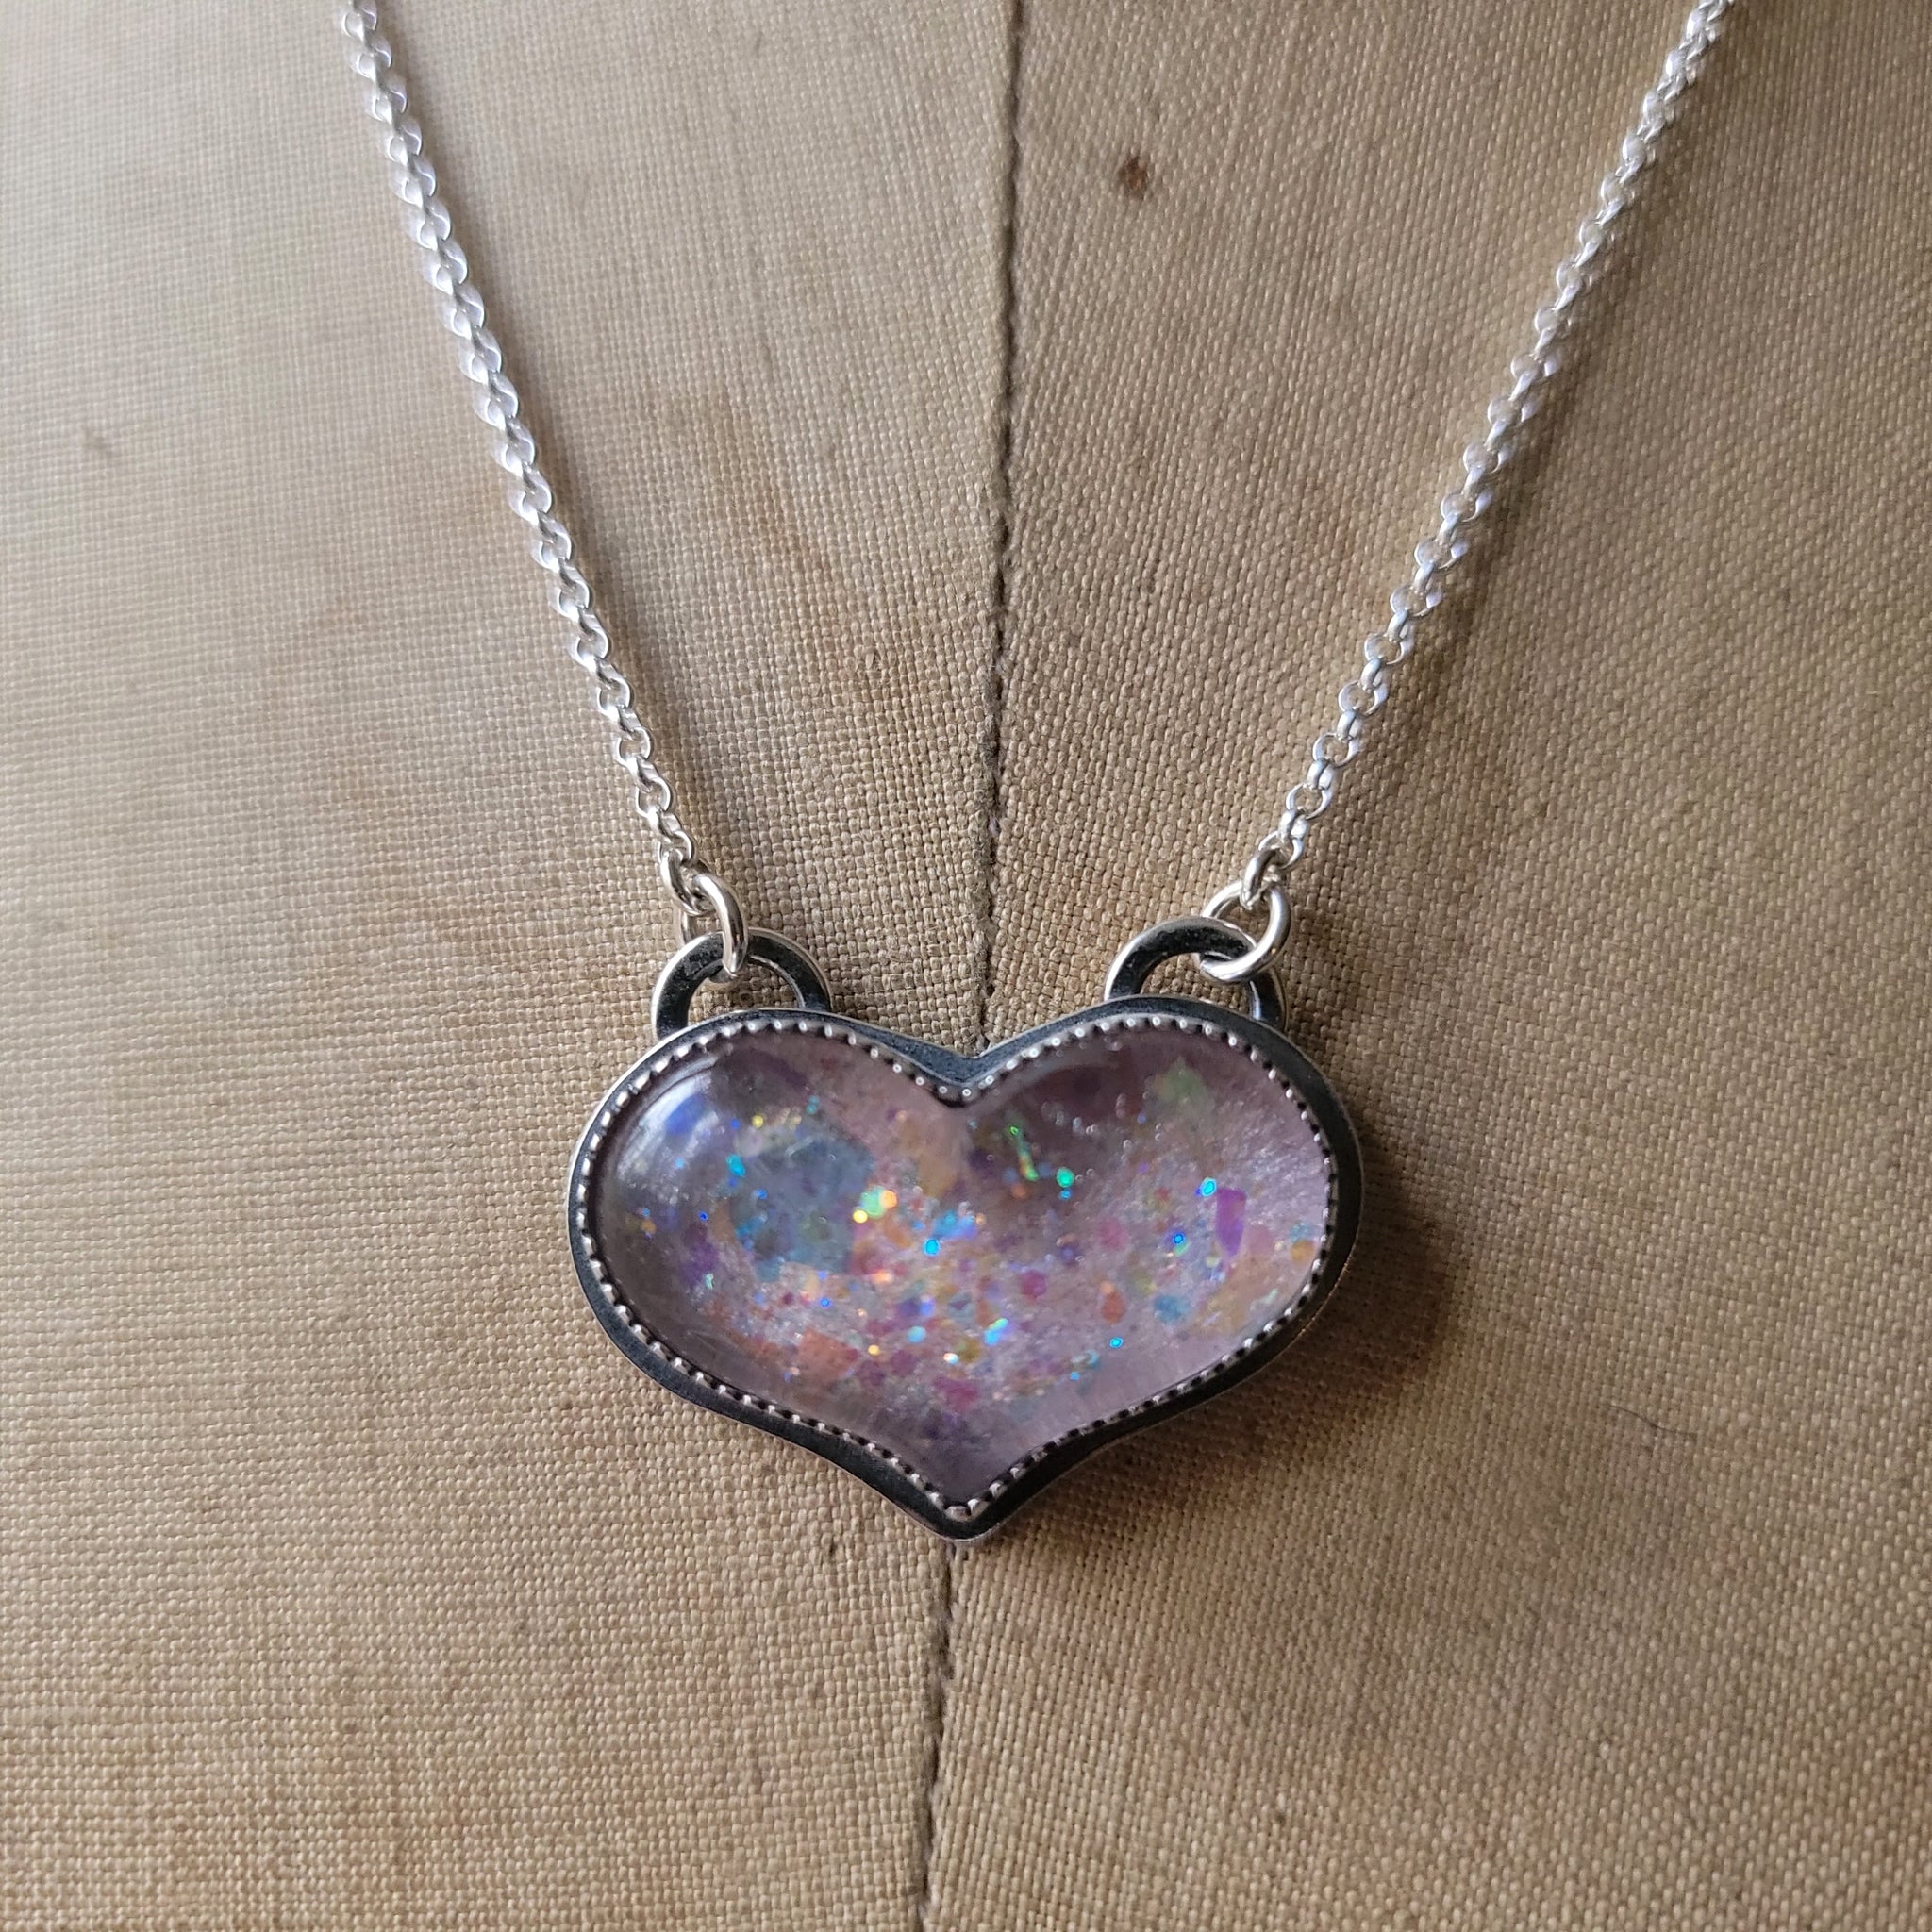 Our Iridescent Heart Necklace ˚ʚ♡ɞ˚ link in bio :) ‎ #handcrafted  #handcraftedjewelry #jewelry #iridescentjewelery #statementn... | Instagram